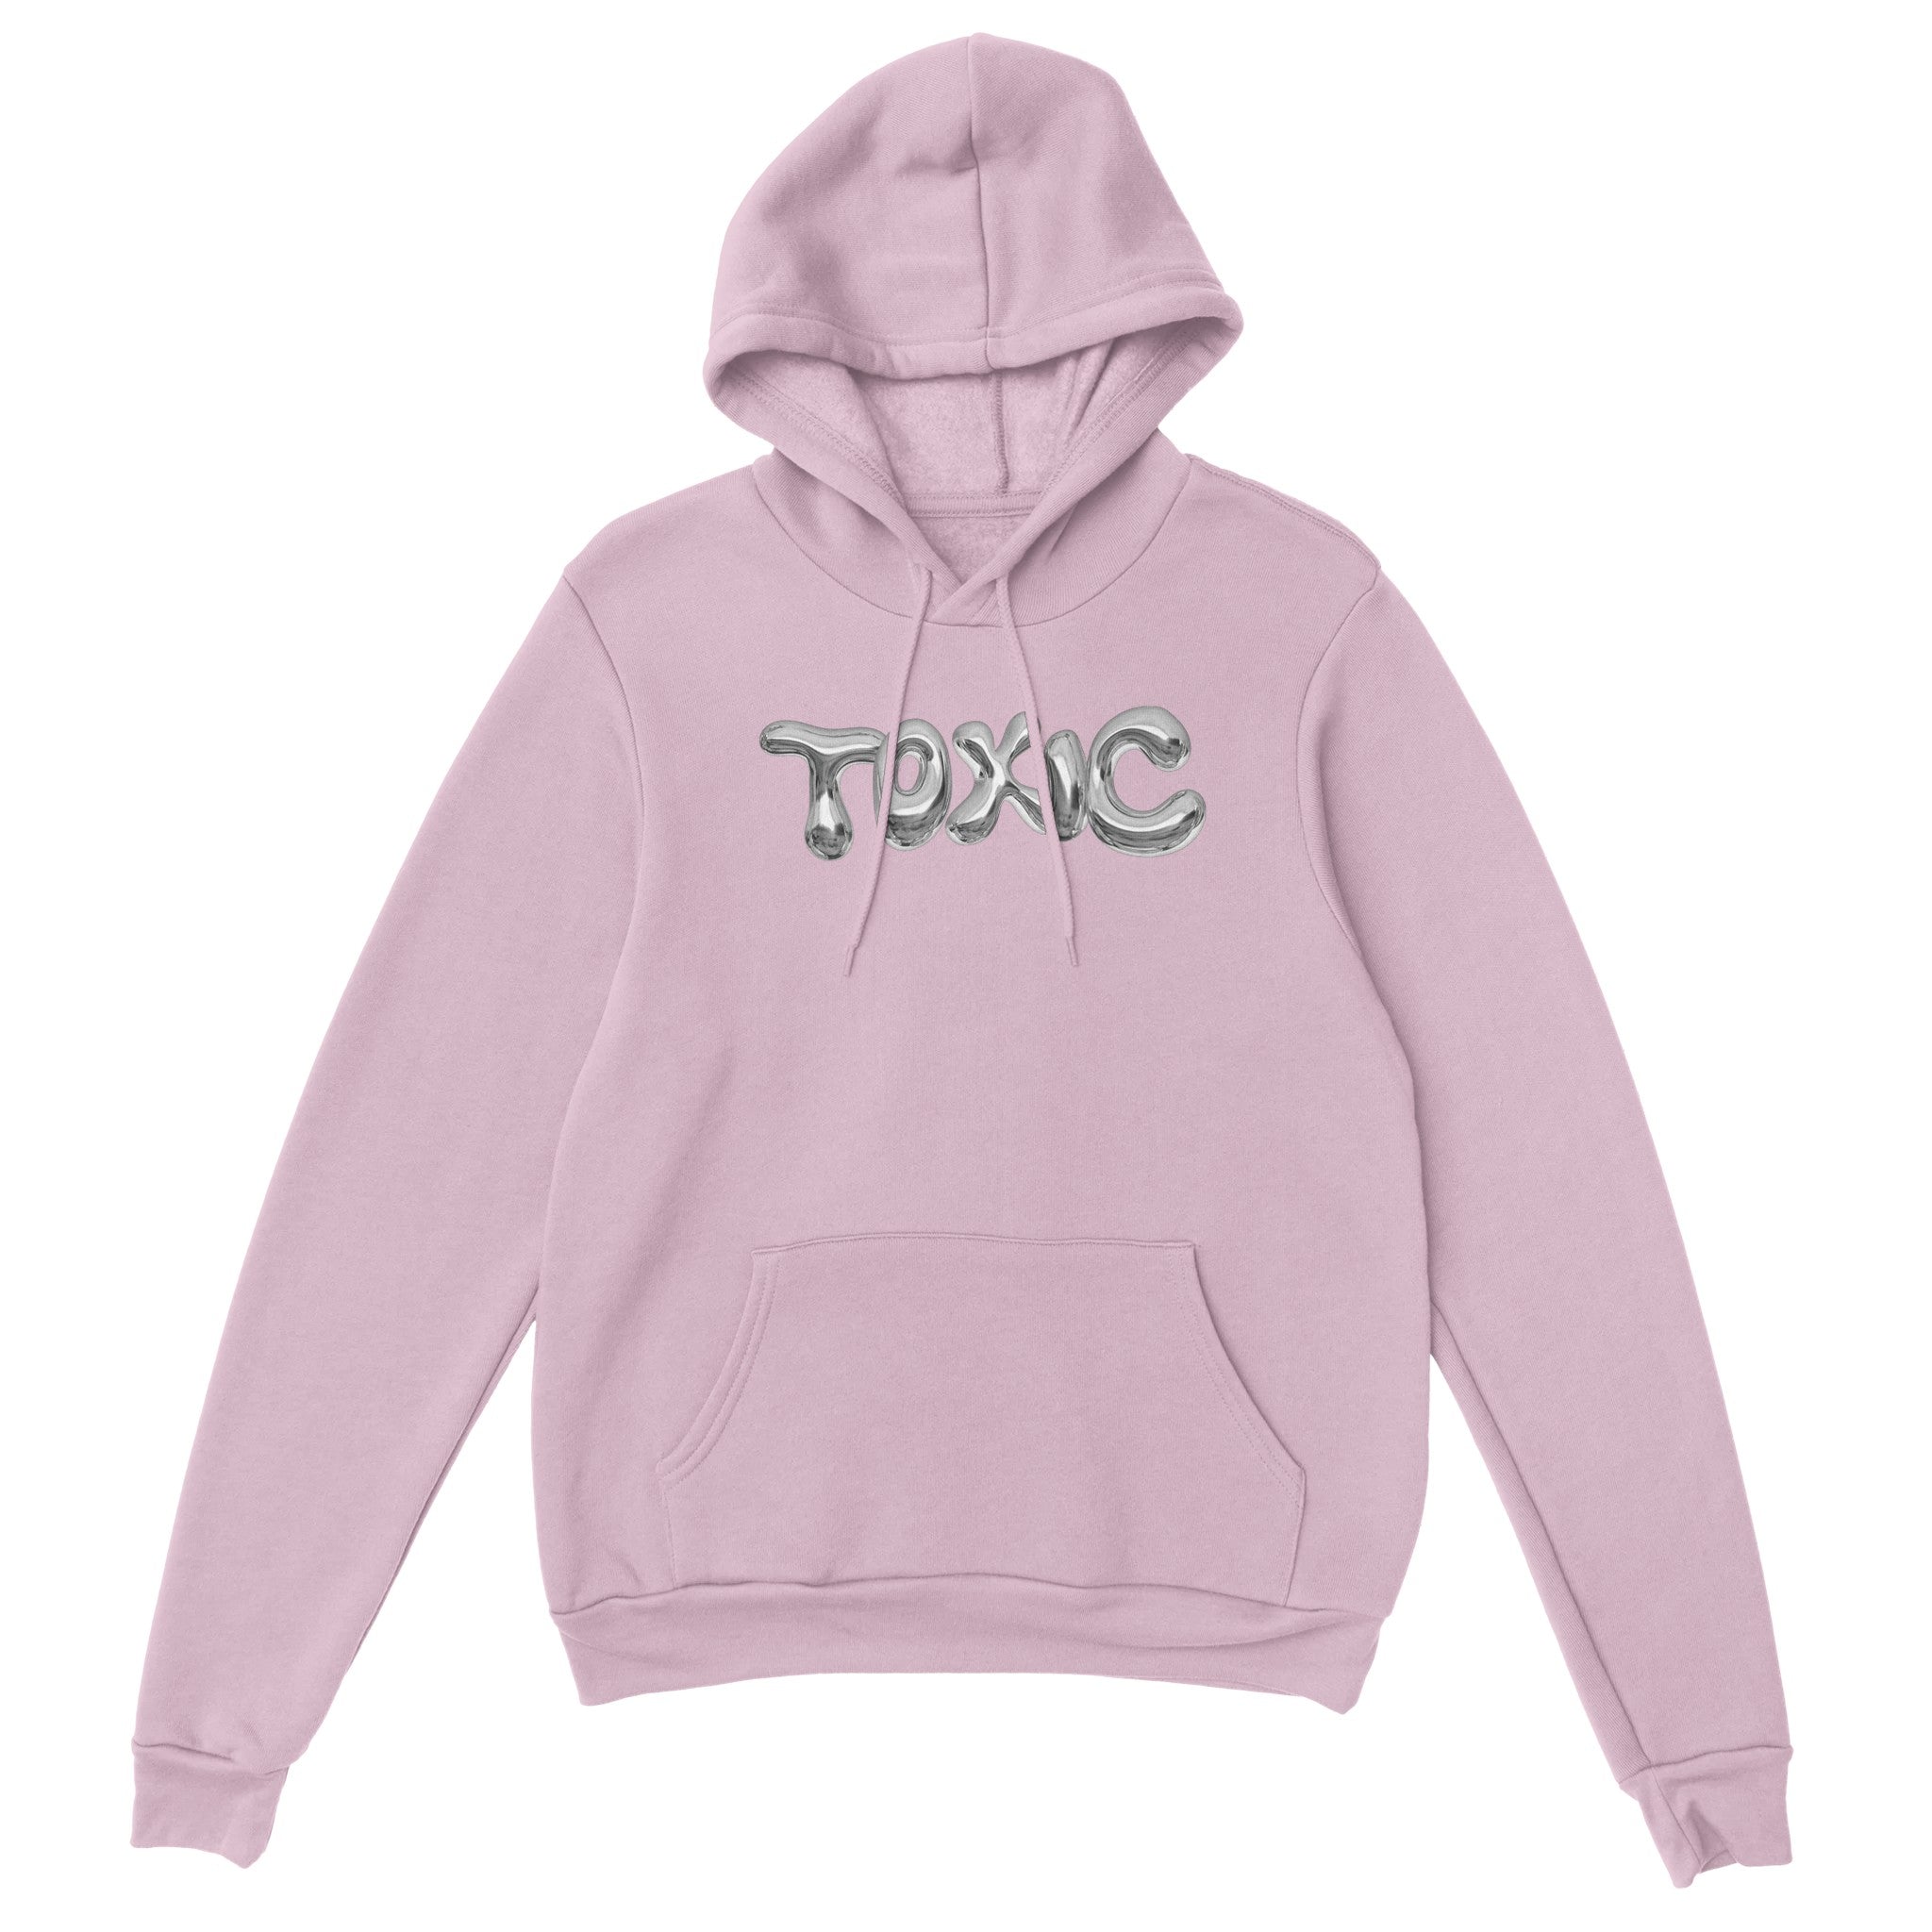 'Toxic' hoodie - In Print We Trust